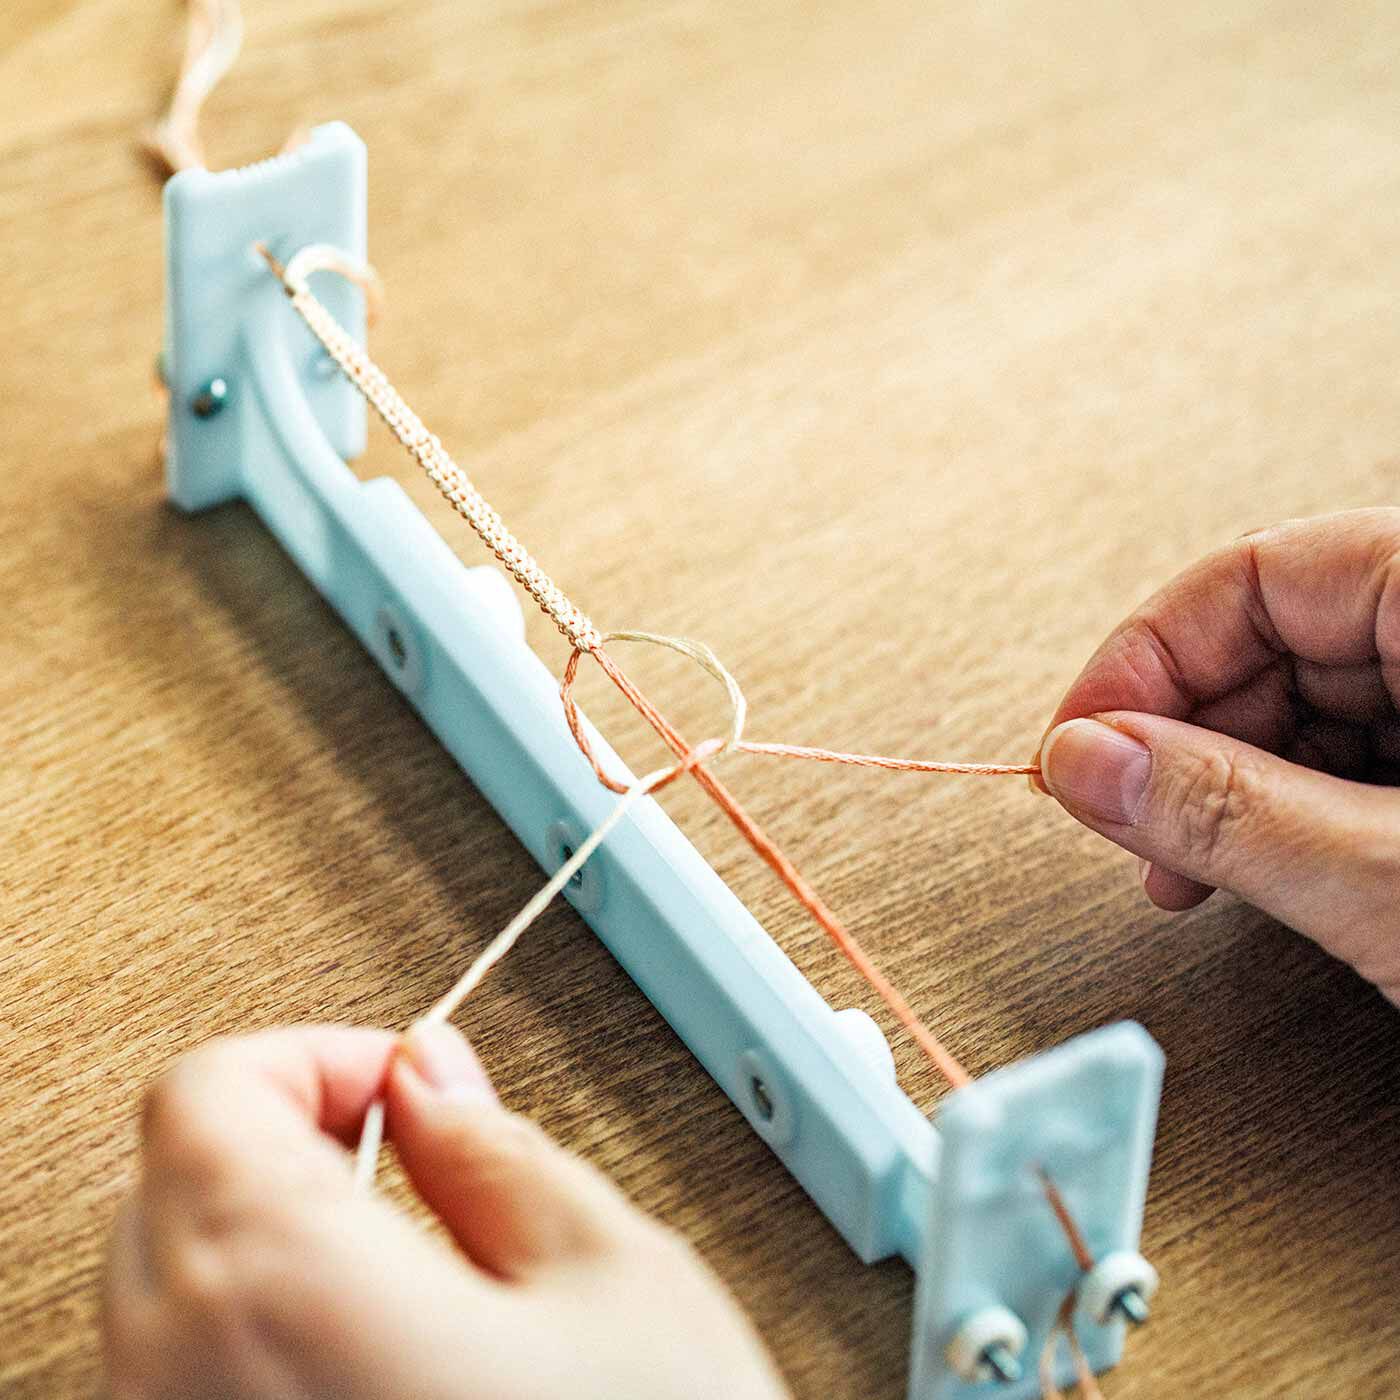 Couturier|上品に着けたい大人なきらめき 結びと織りを楽しむブレスレットの会|ブレスレットメーカーにたて糸を張り、別の糸を結んだり織ったりして作ります。